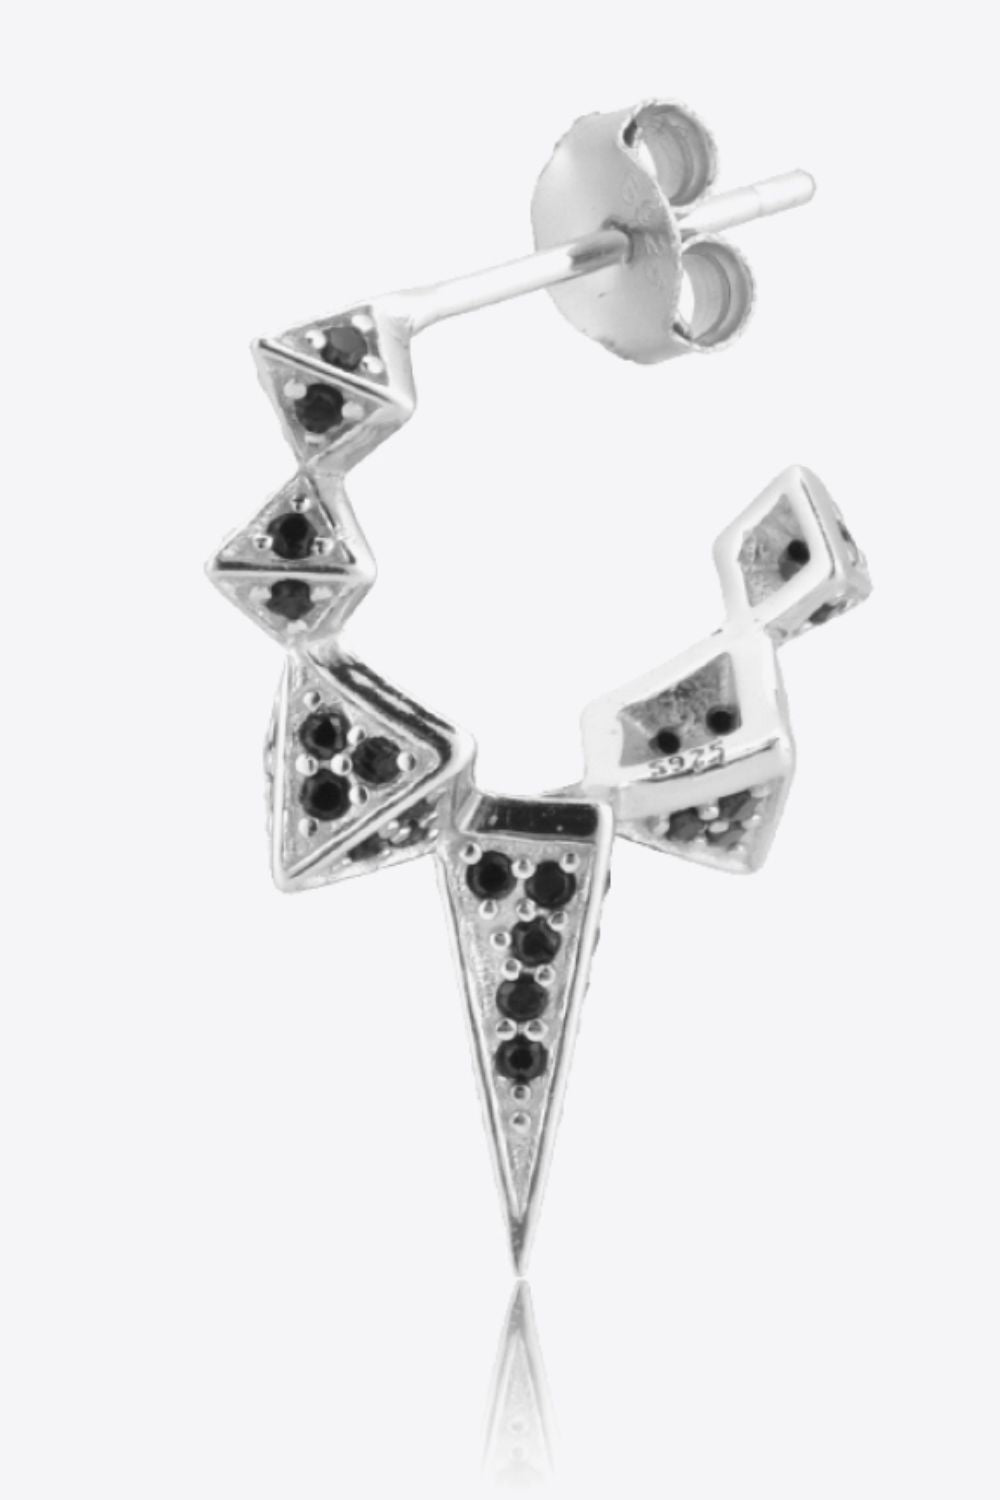 Geometric Zircon Decor 925 Sterling Silver Earrings - Guy Christopher